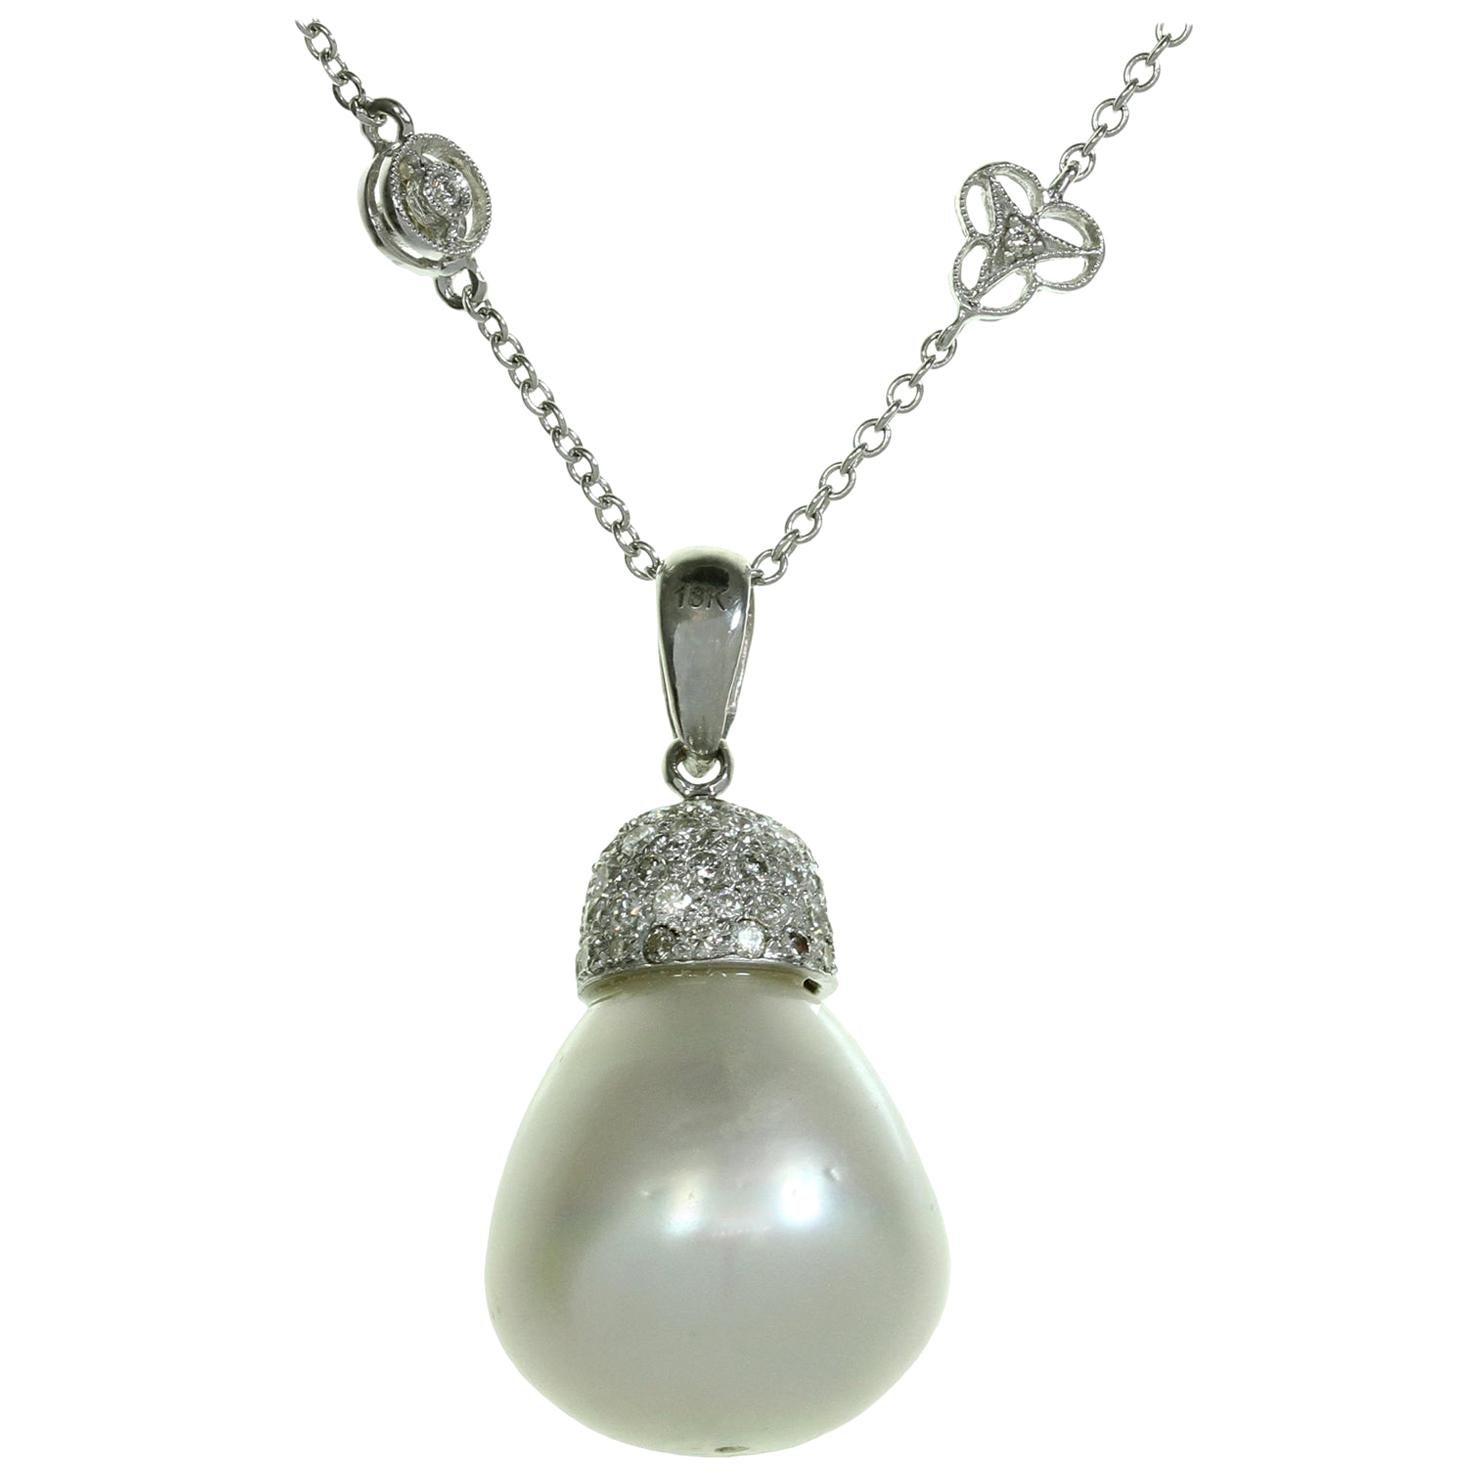 Halskette mit großem Anhänger Schmuckmetall Stein & Perlenbesatz Barock Stil 